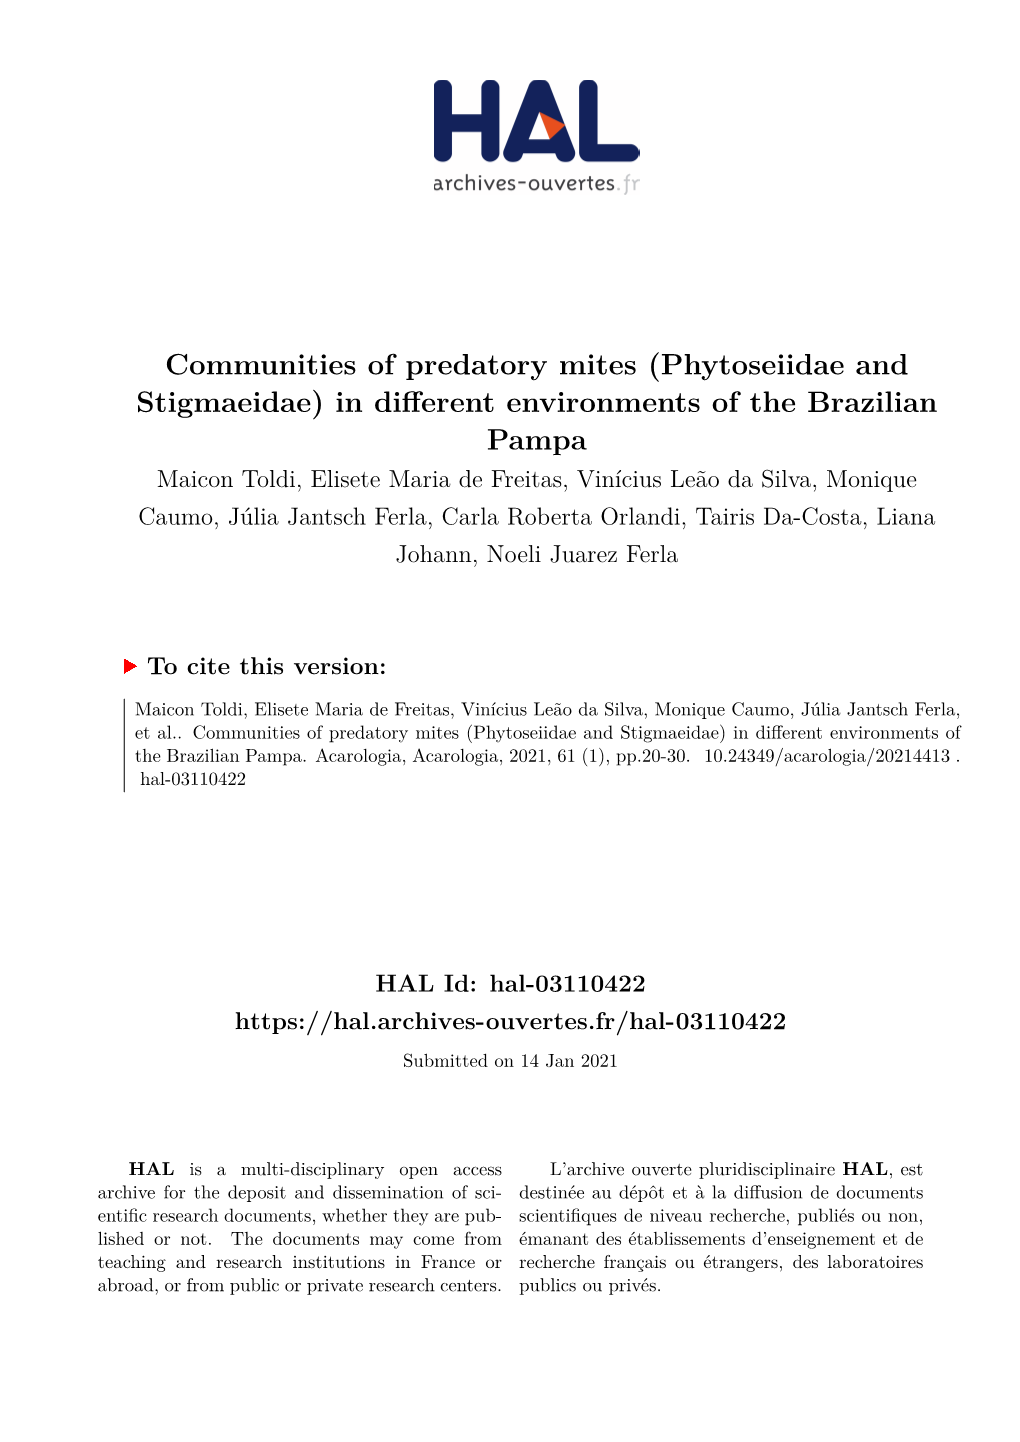 Phytoseiidae and Stigmaeidae